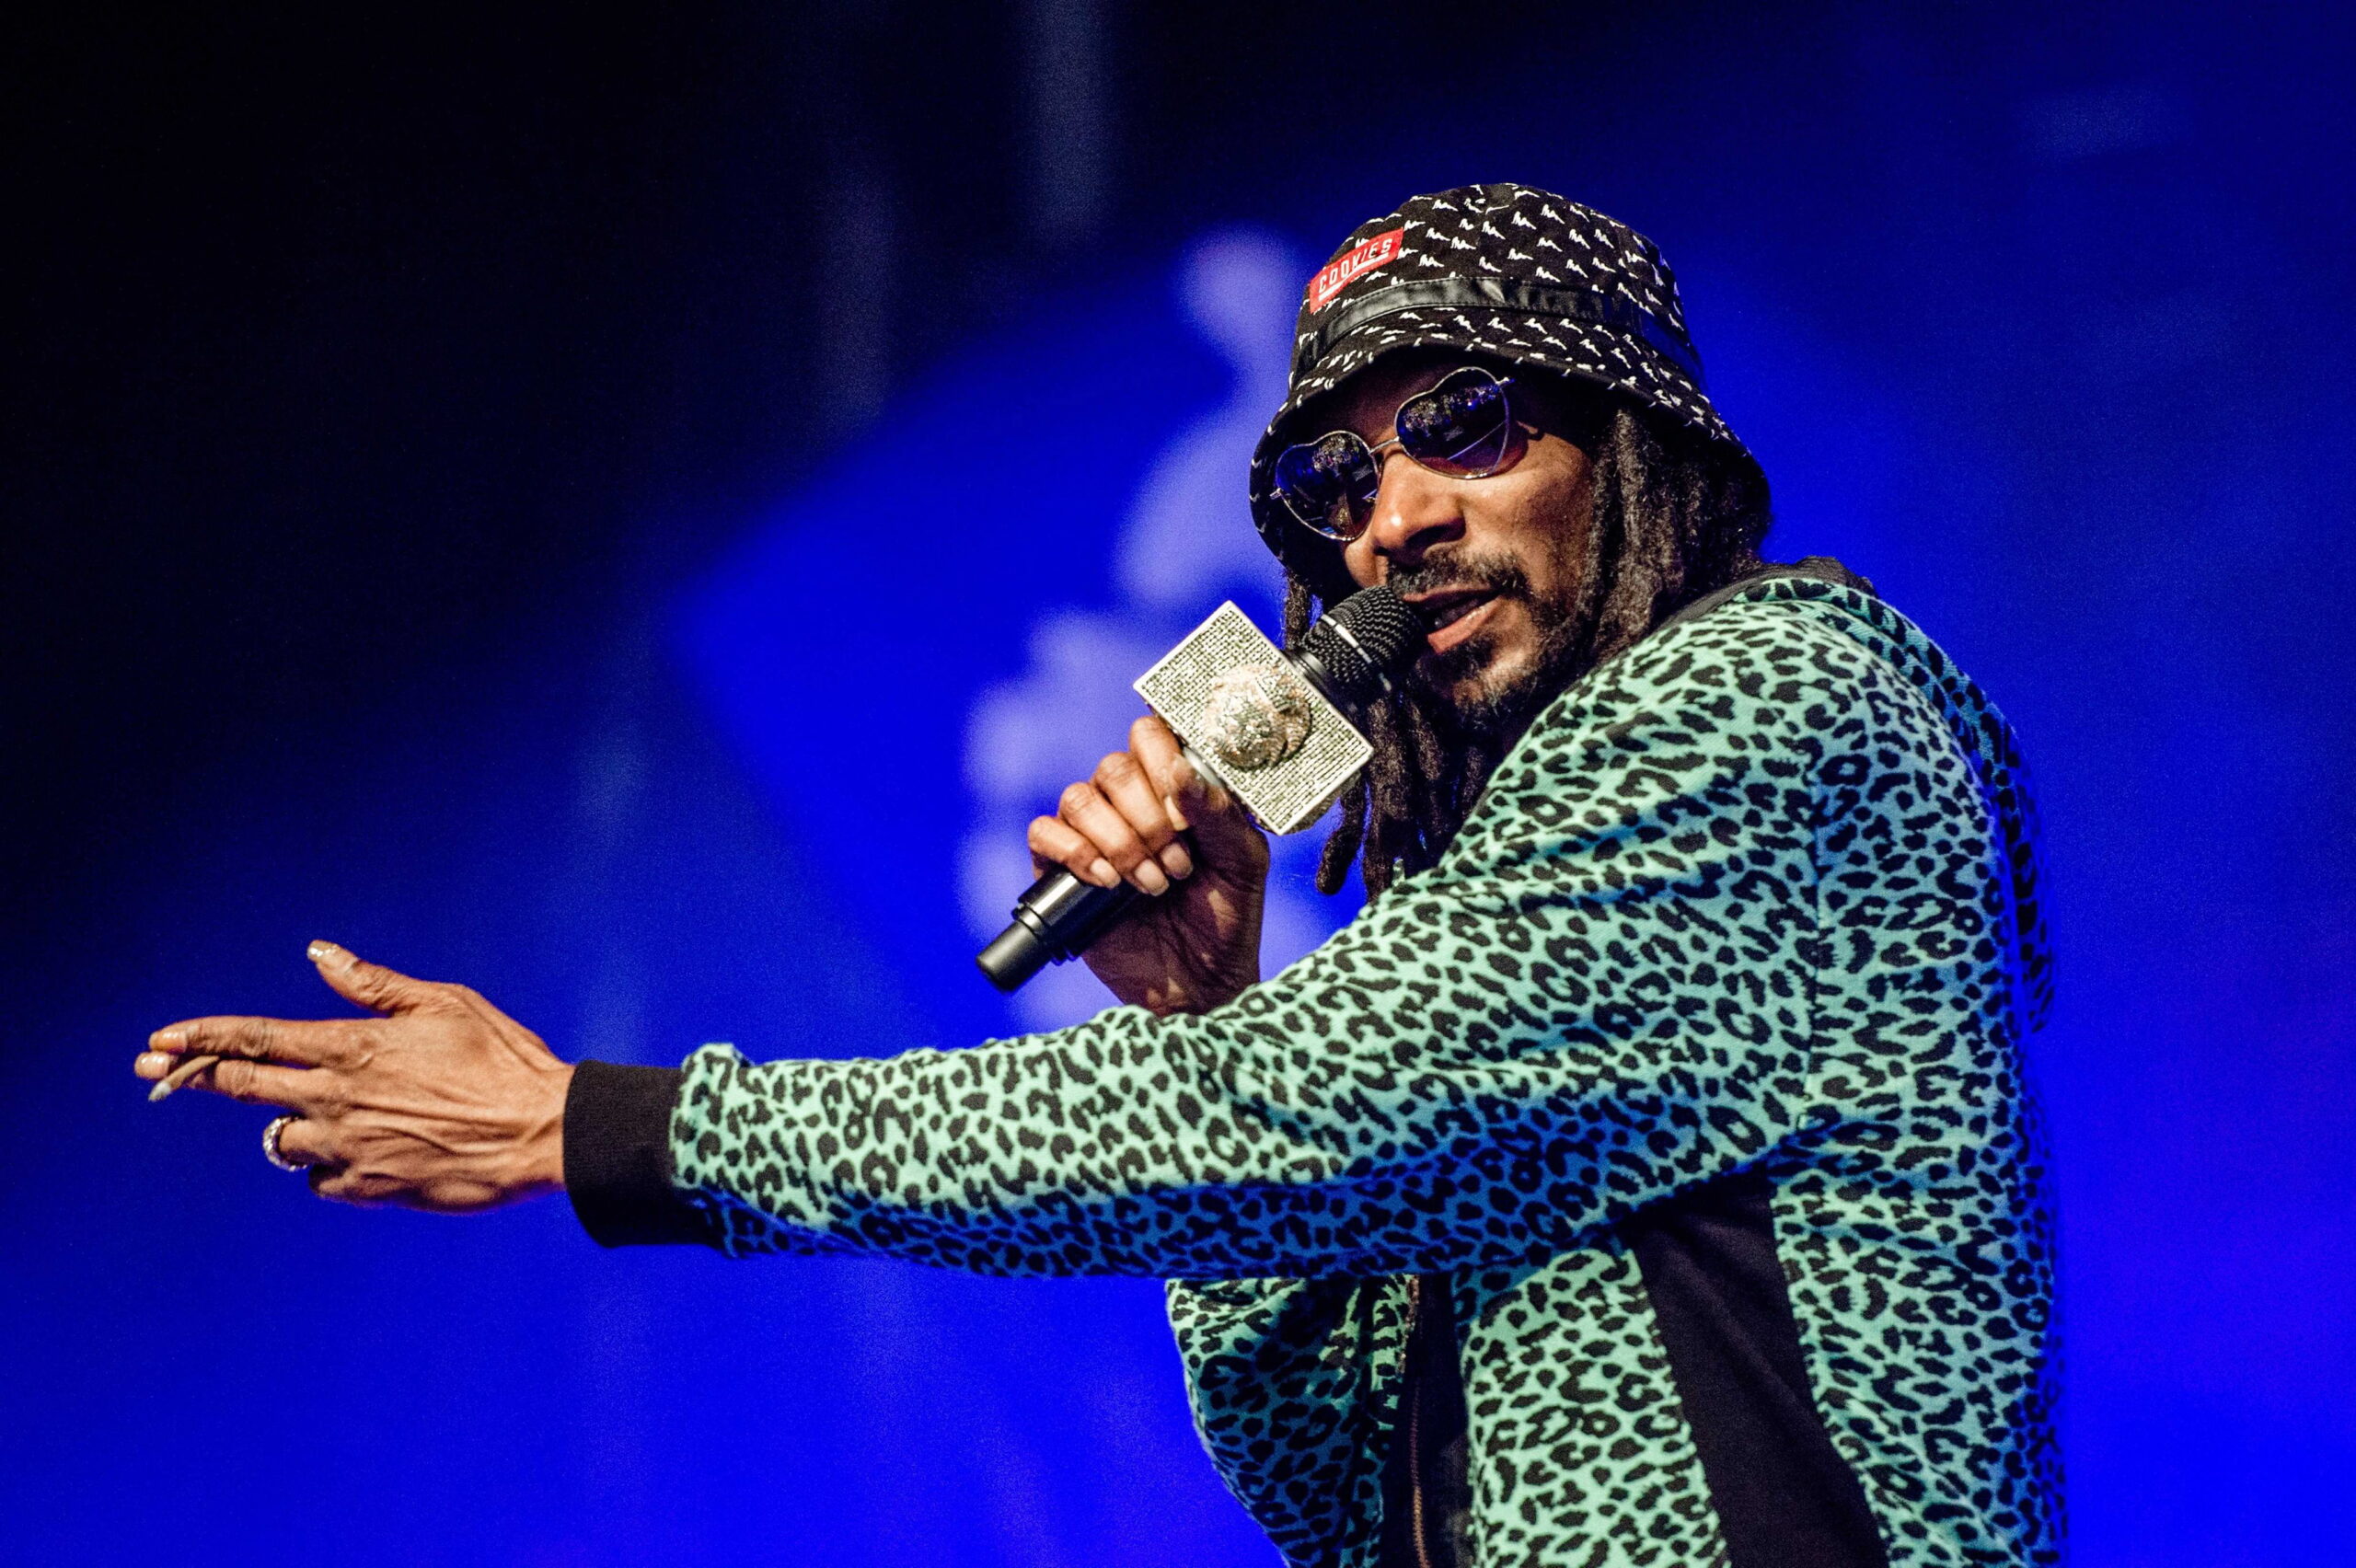 Das Leben des US-Rappers Snoop Dogg wird verfilmt. (Archivbild)